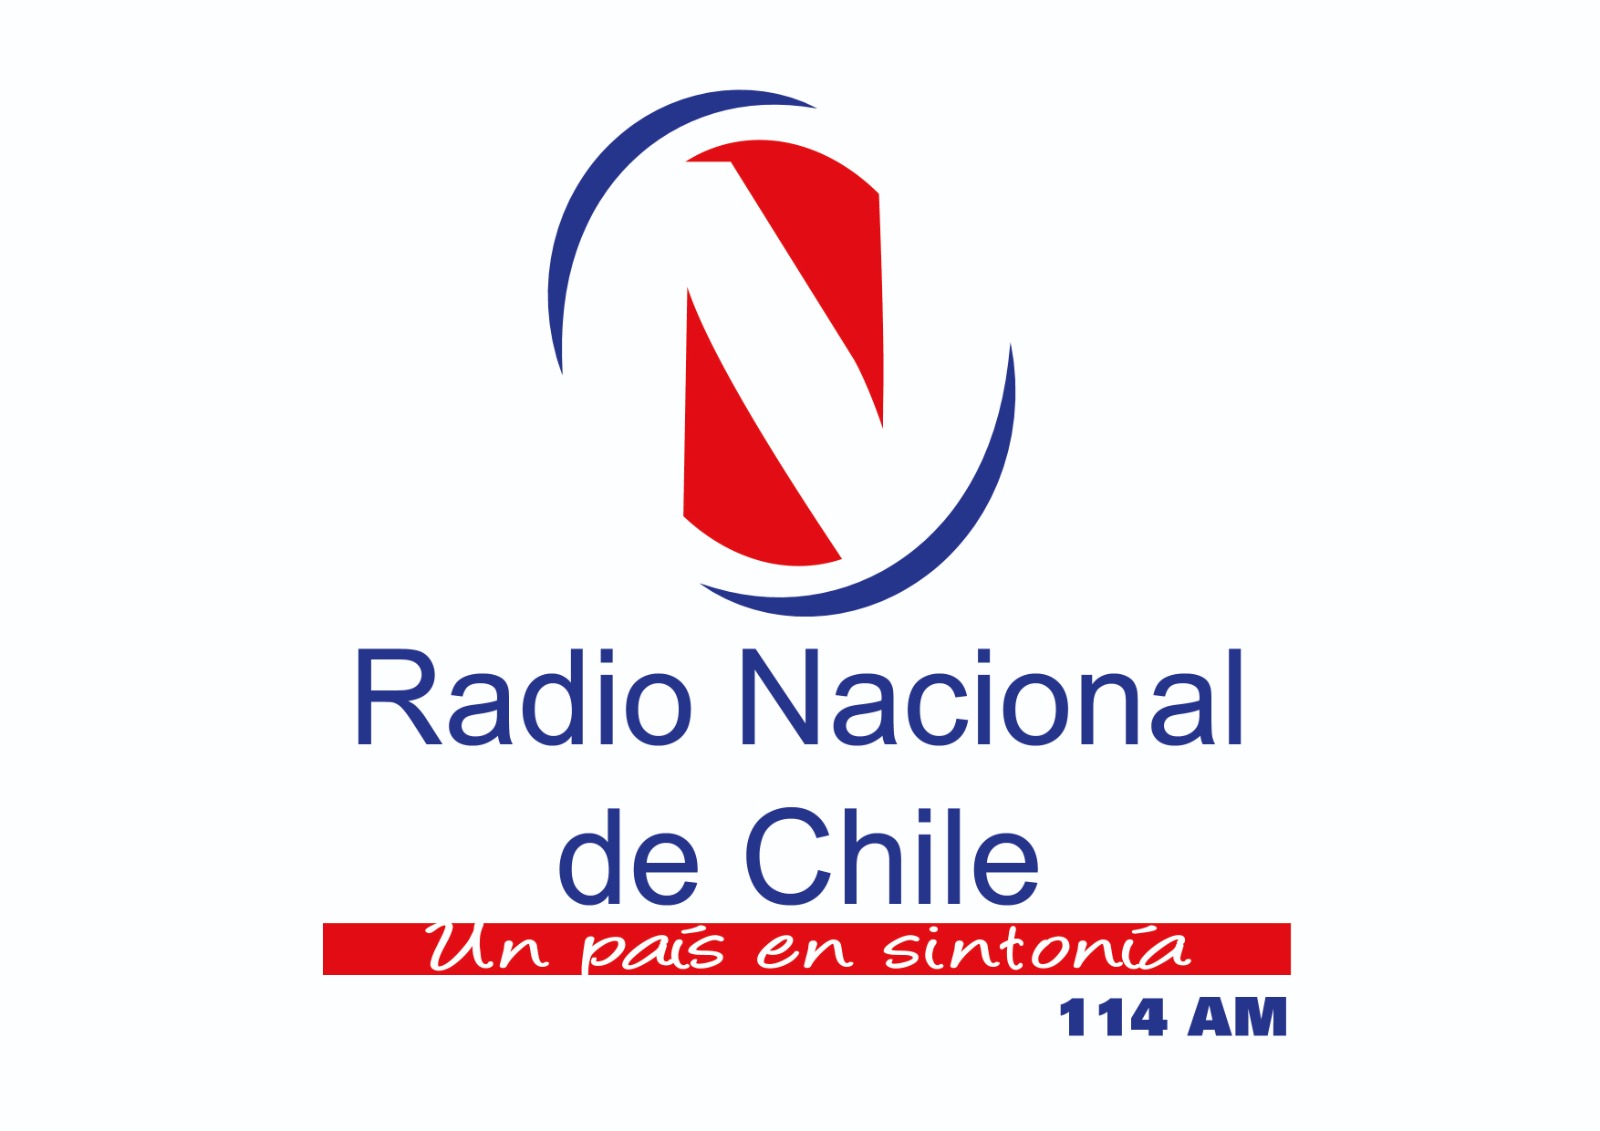 Radio Nacional de Chile - Un país en sintonía